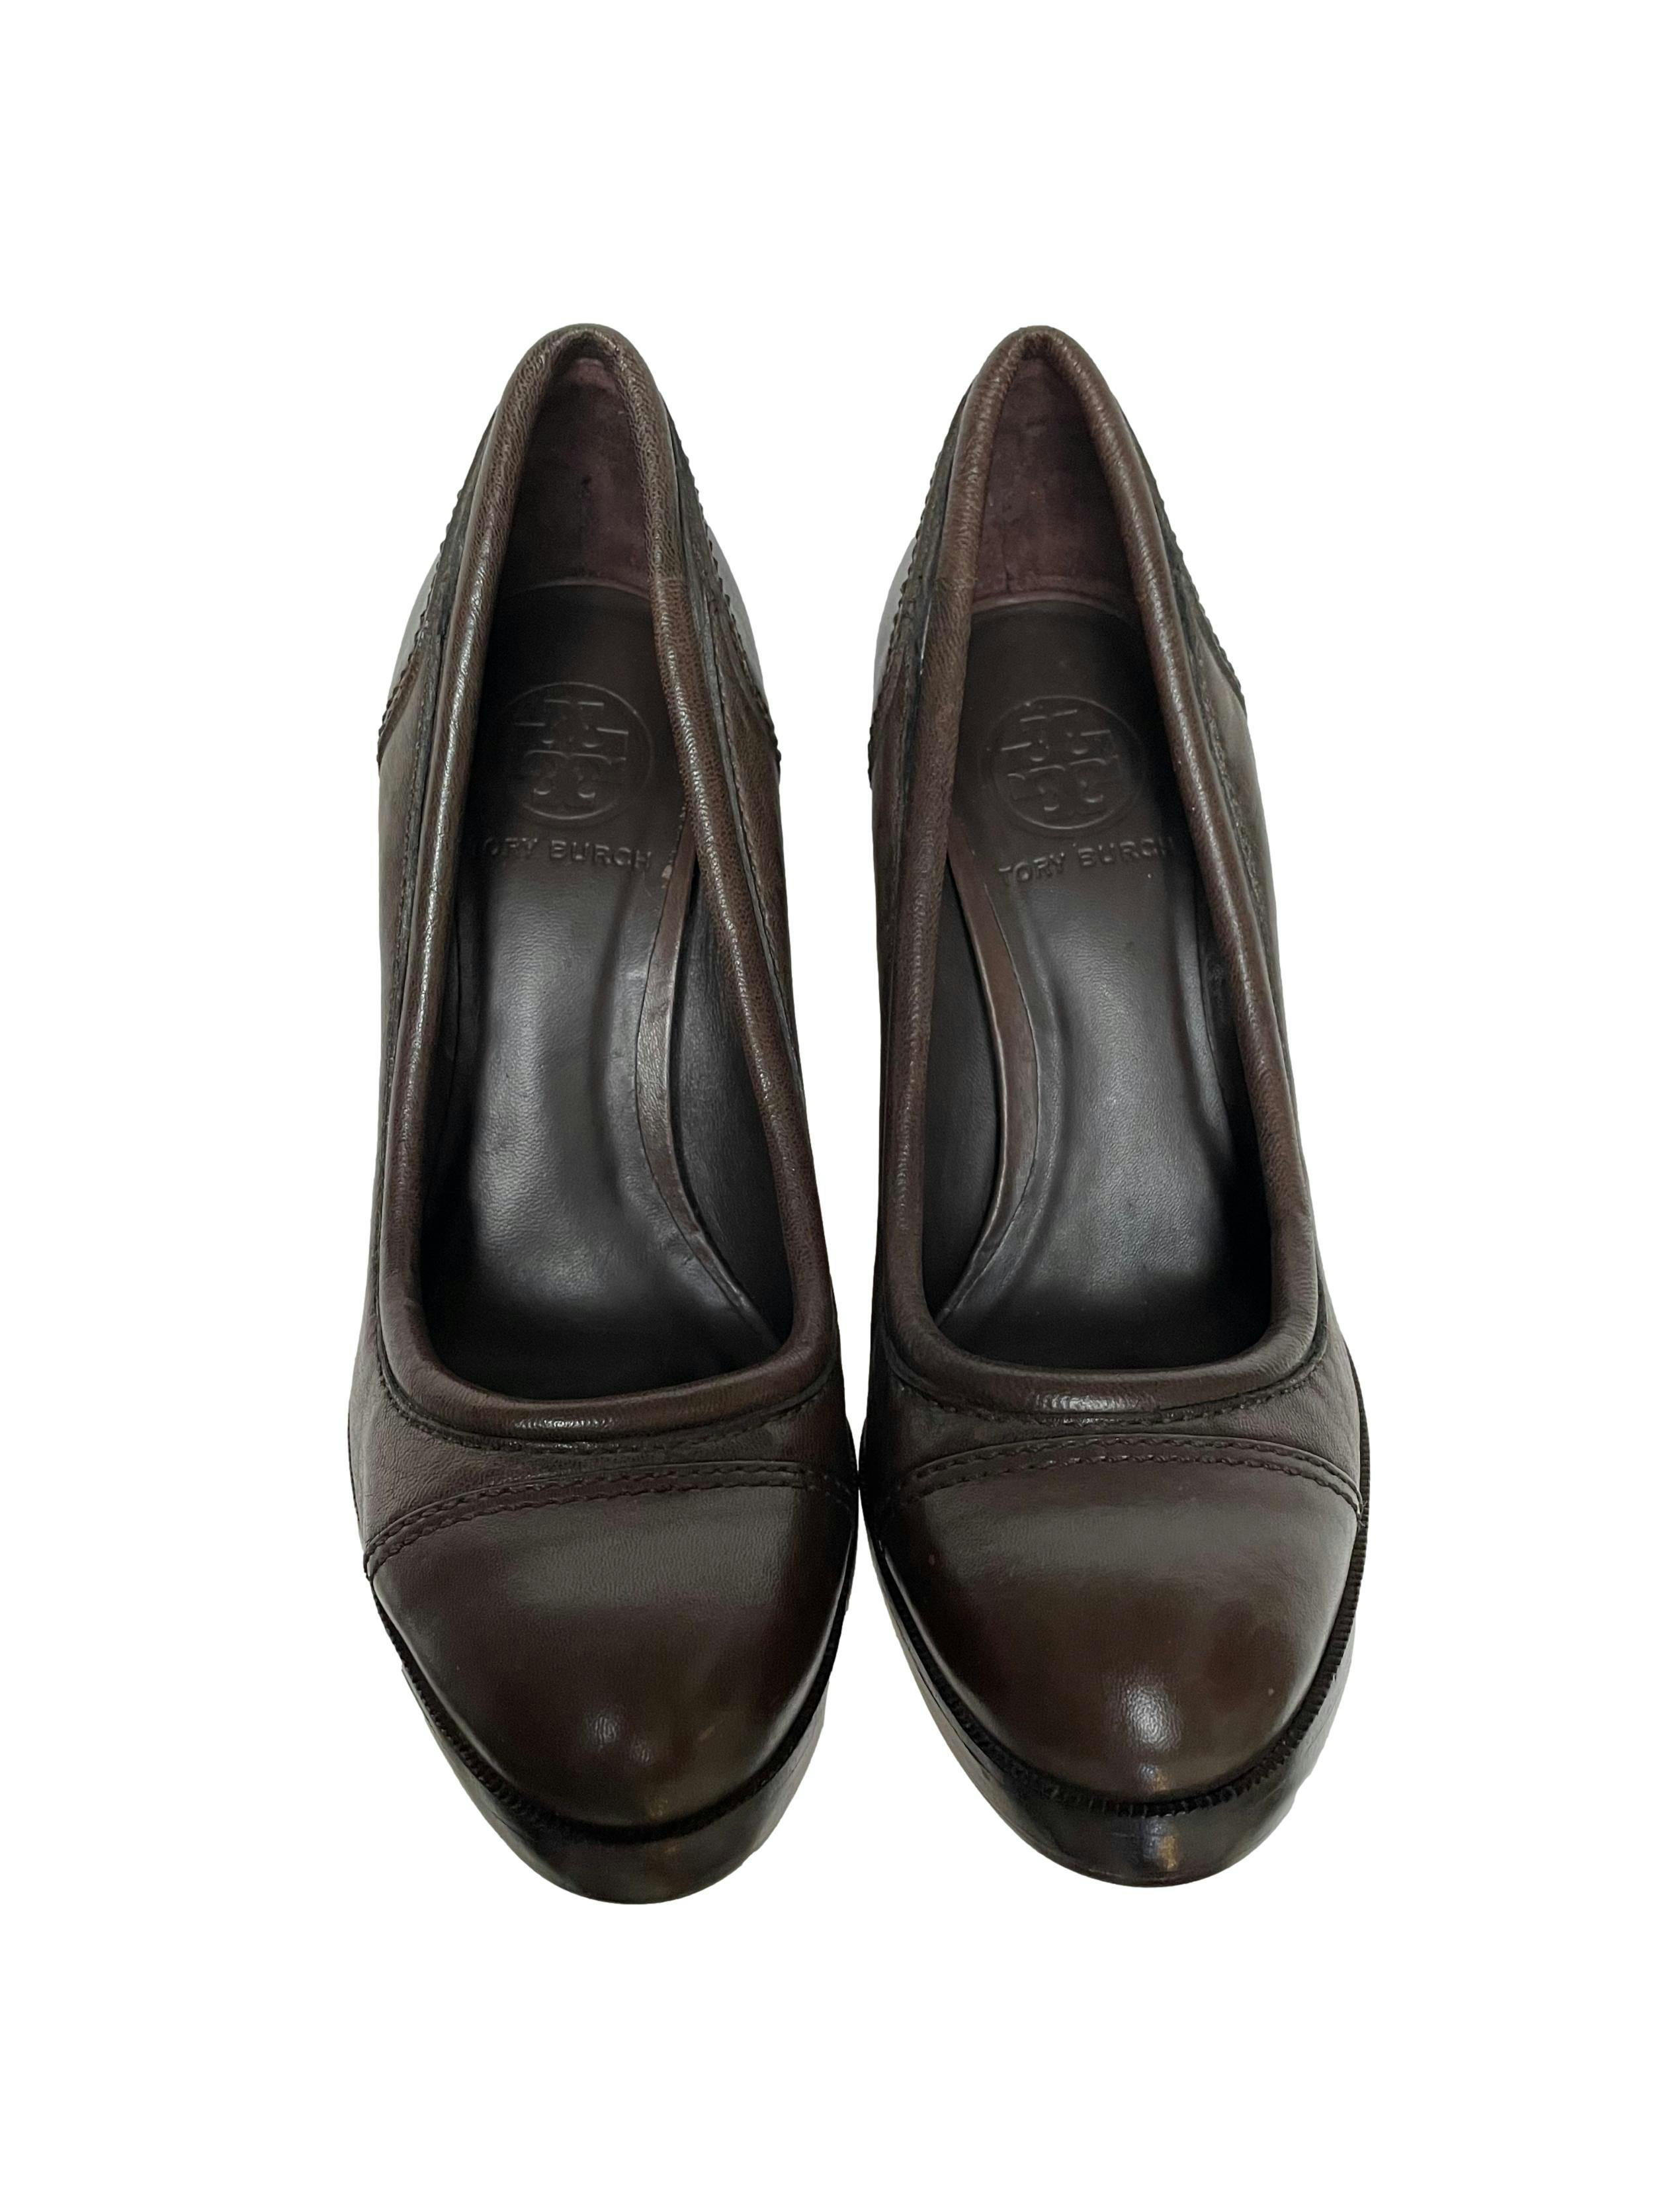 Zapatos Tory Burch 100% cuero marrón, taco 12 plataforma 2cm. Estado 9/10. Precio original $250